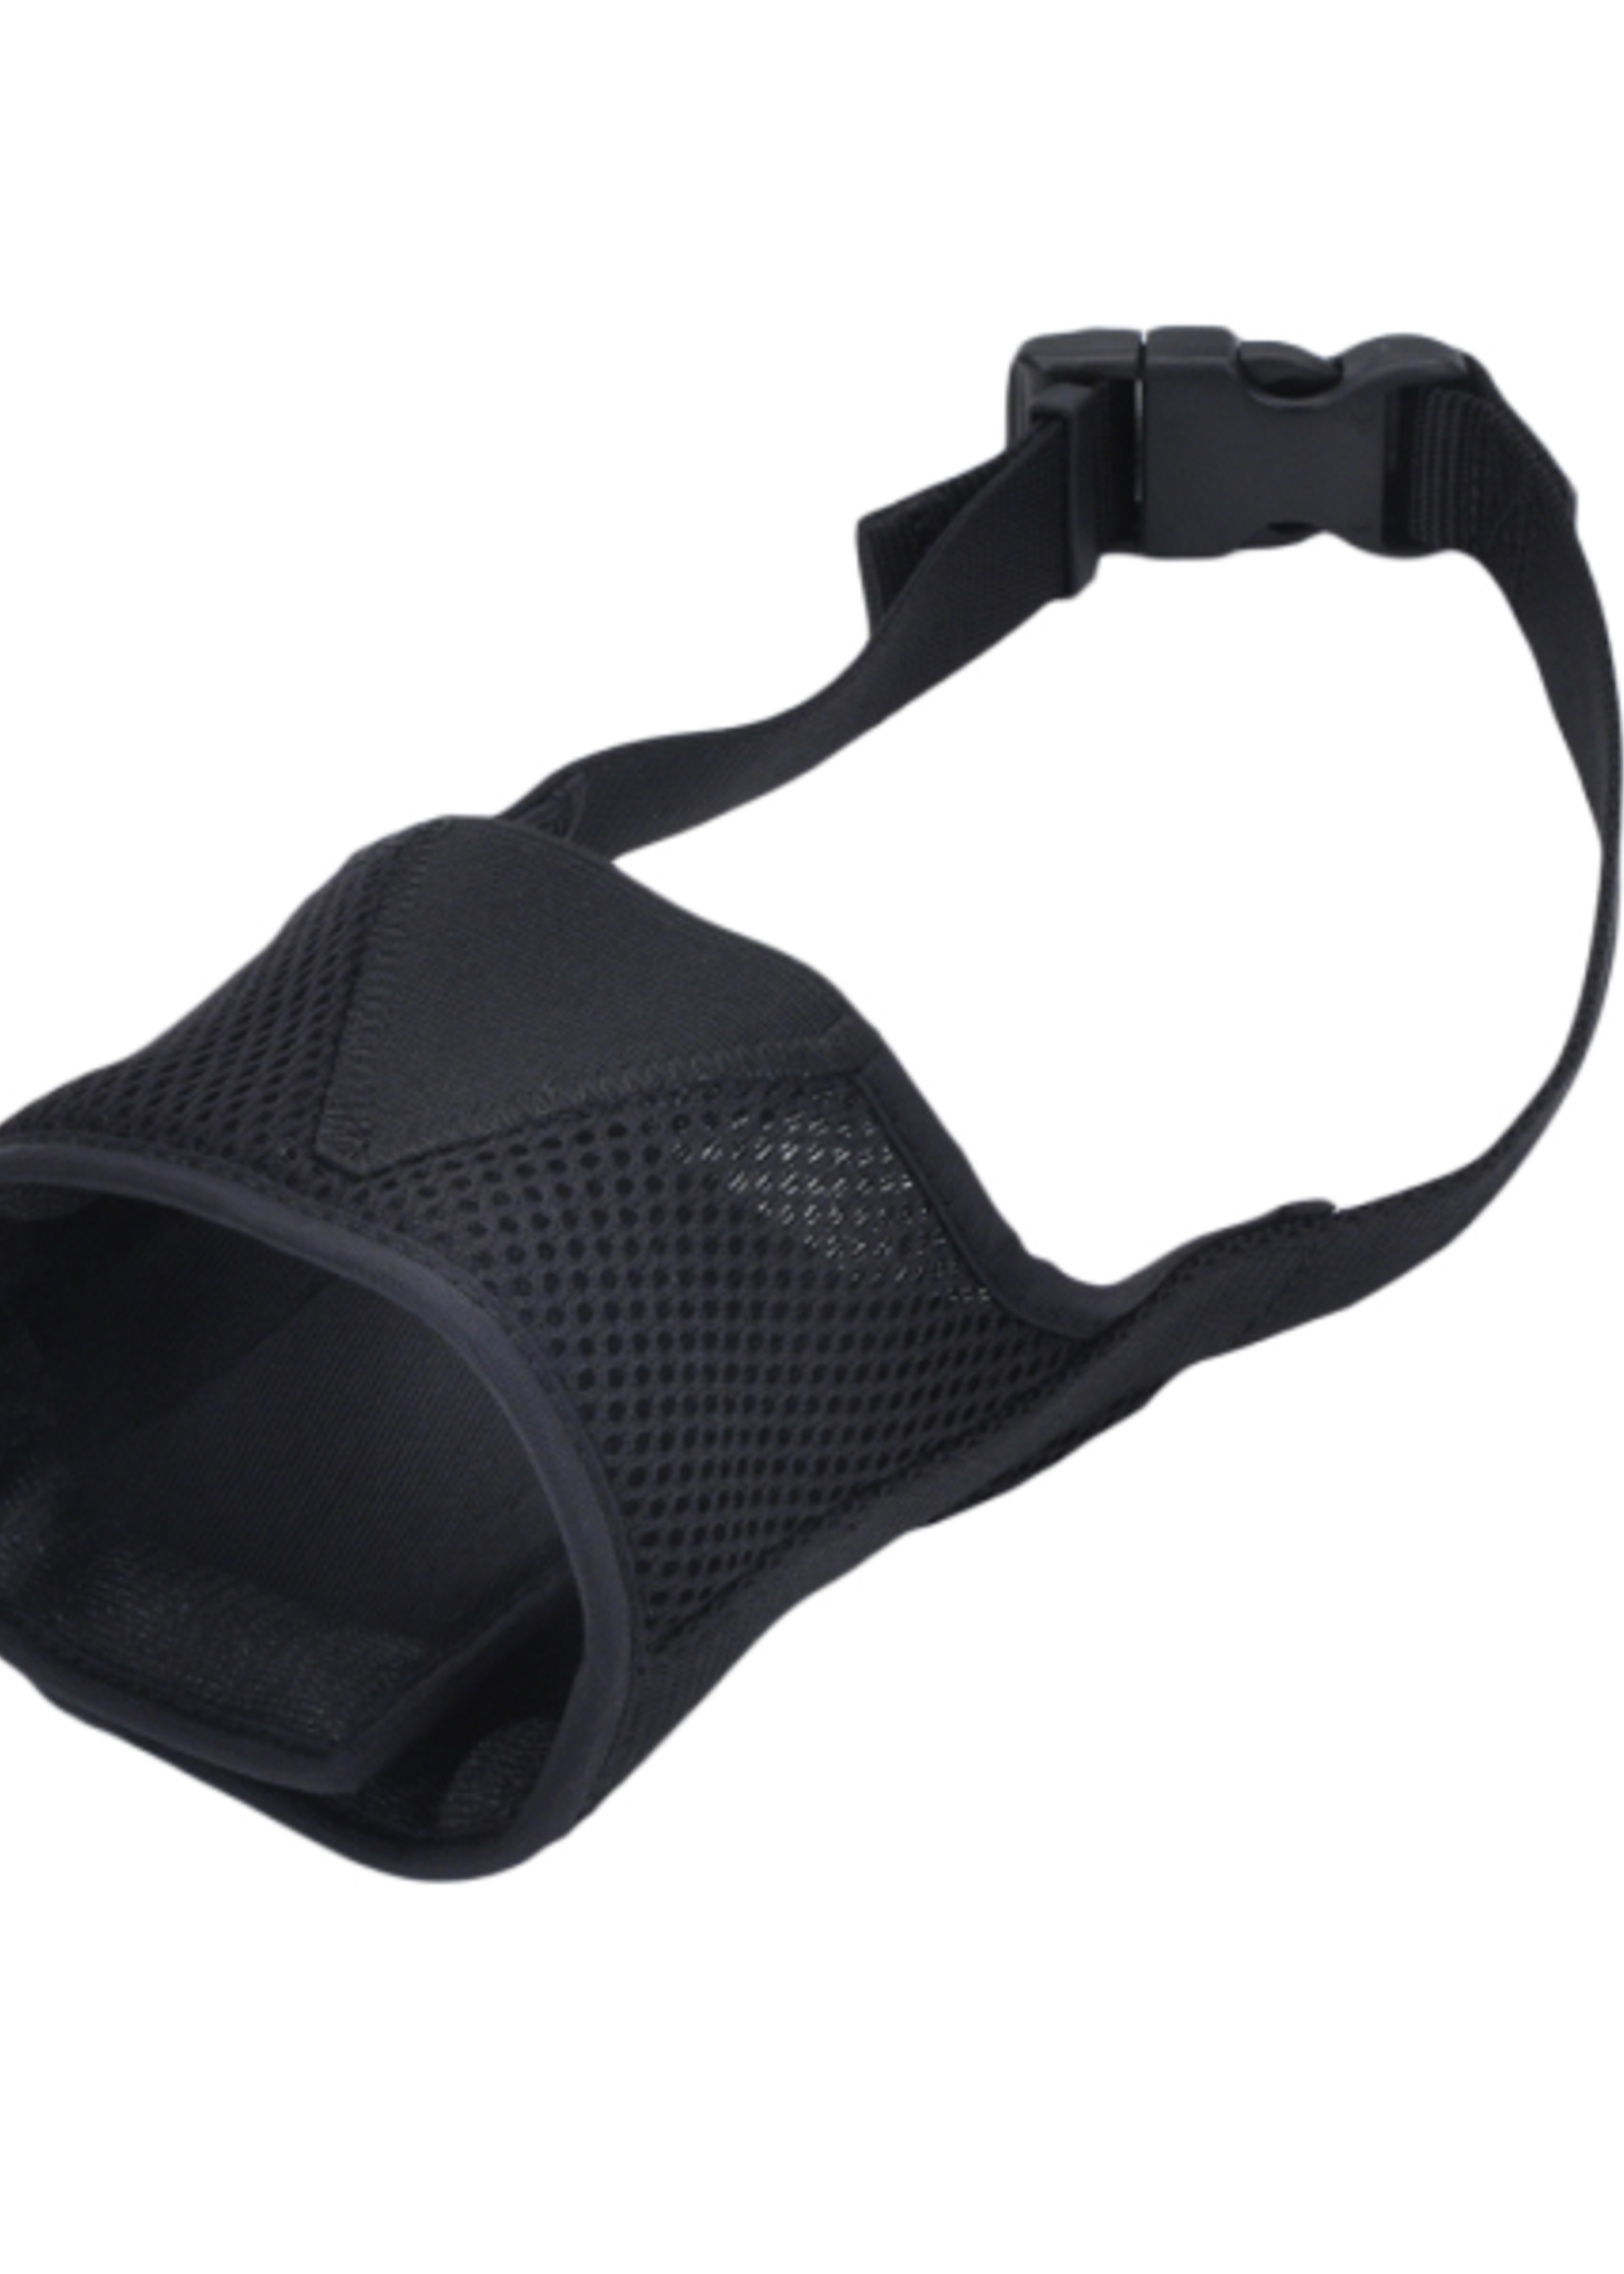 Adjustable Comfort Muzzle -Black-Medium